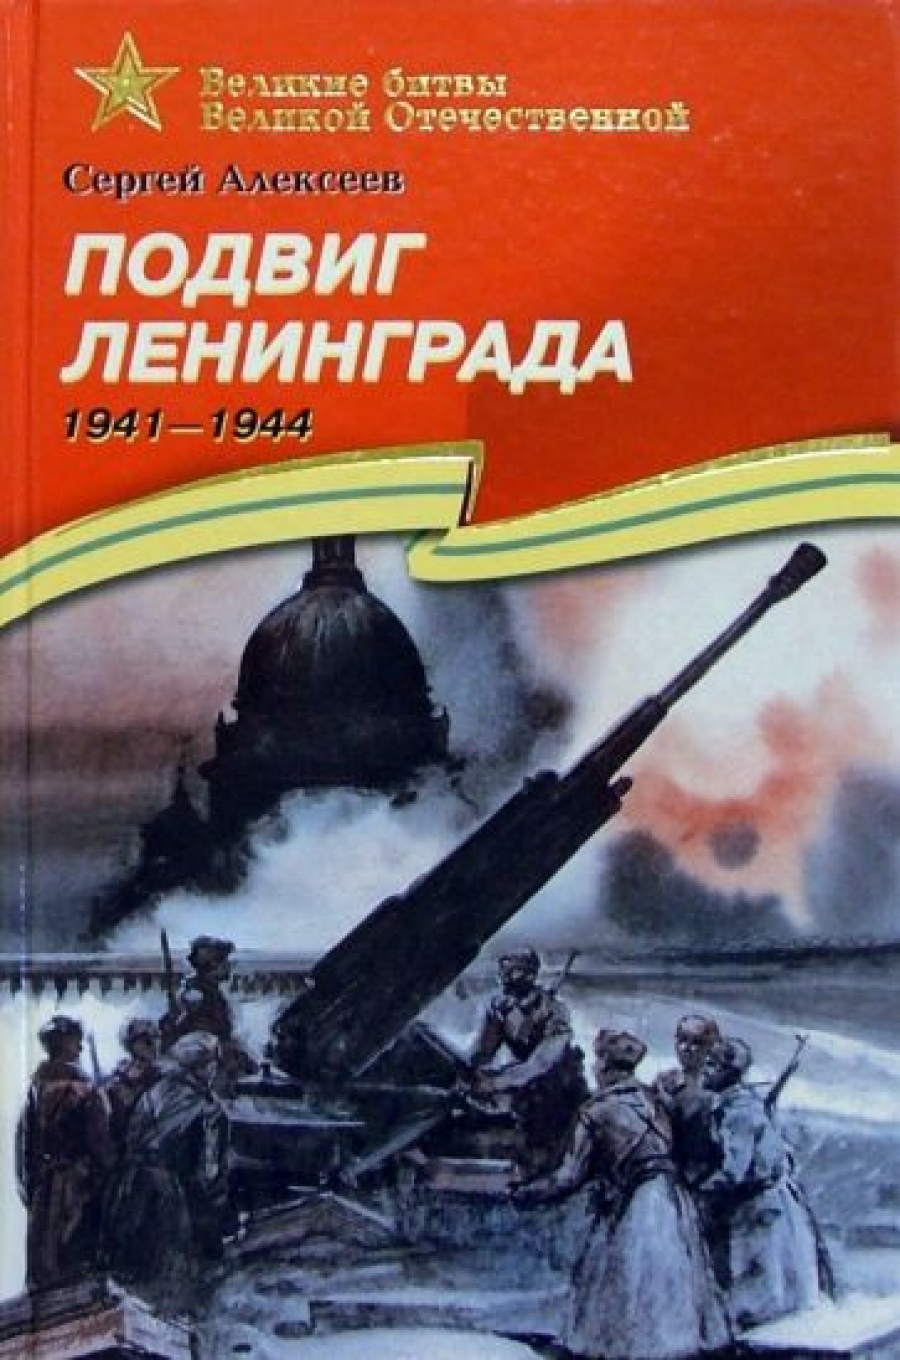  ..  . 1941-1944 